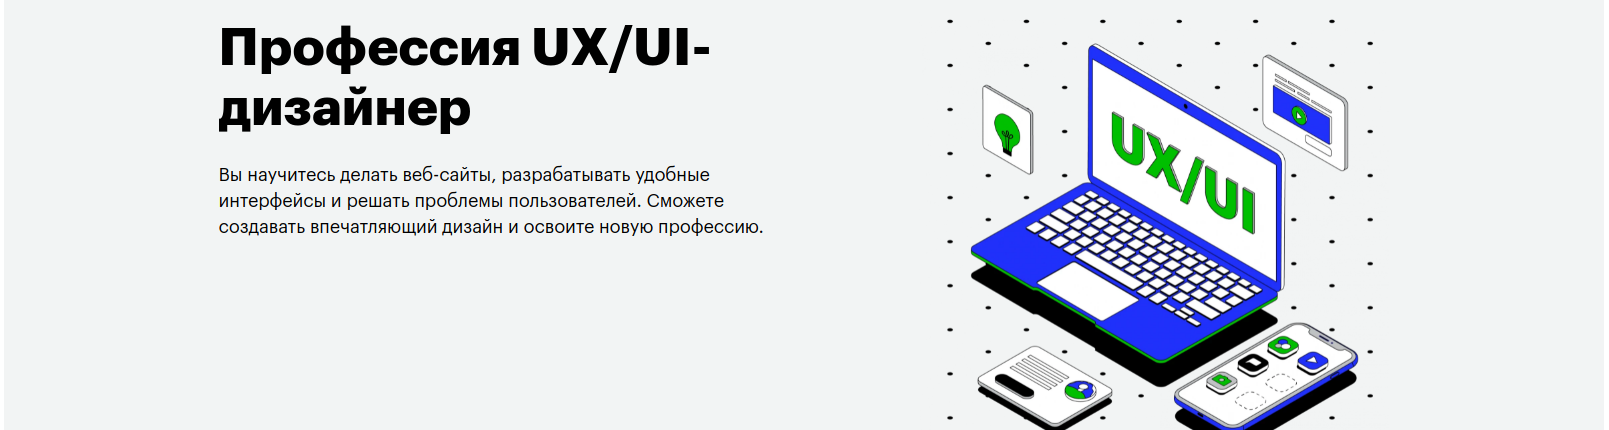 Профессия UX/UI дизайнер от Skillbox